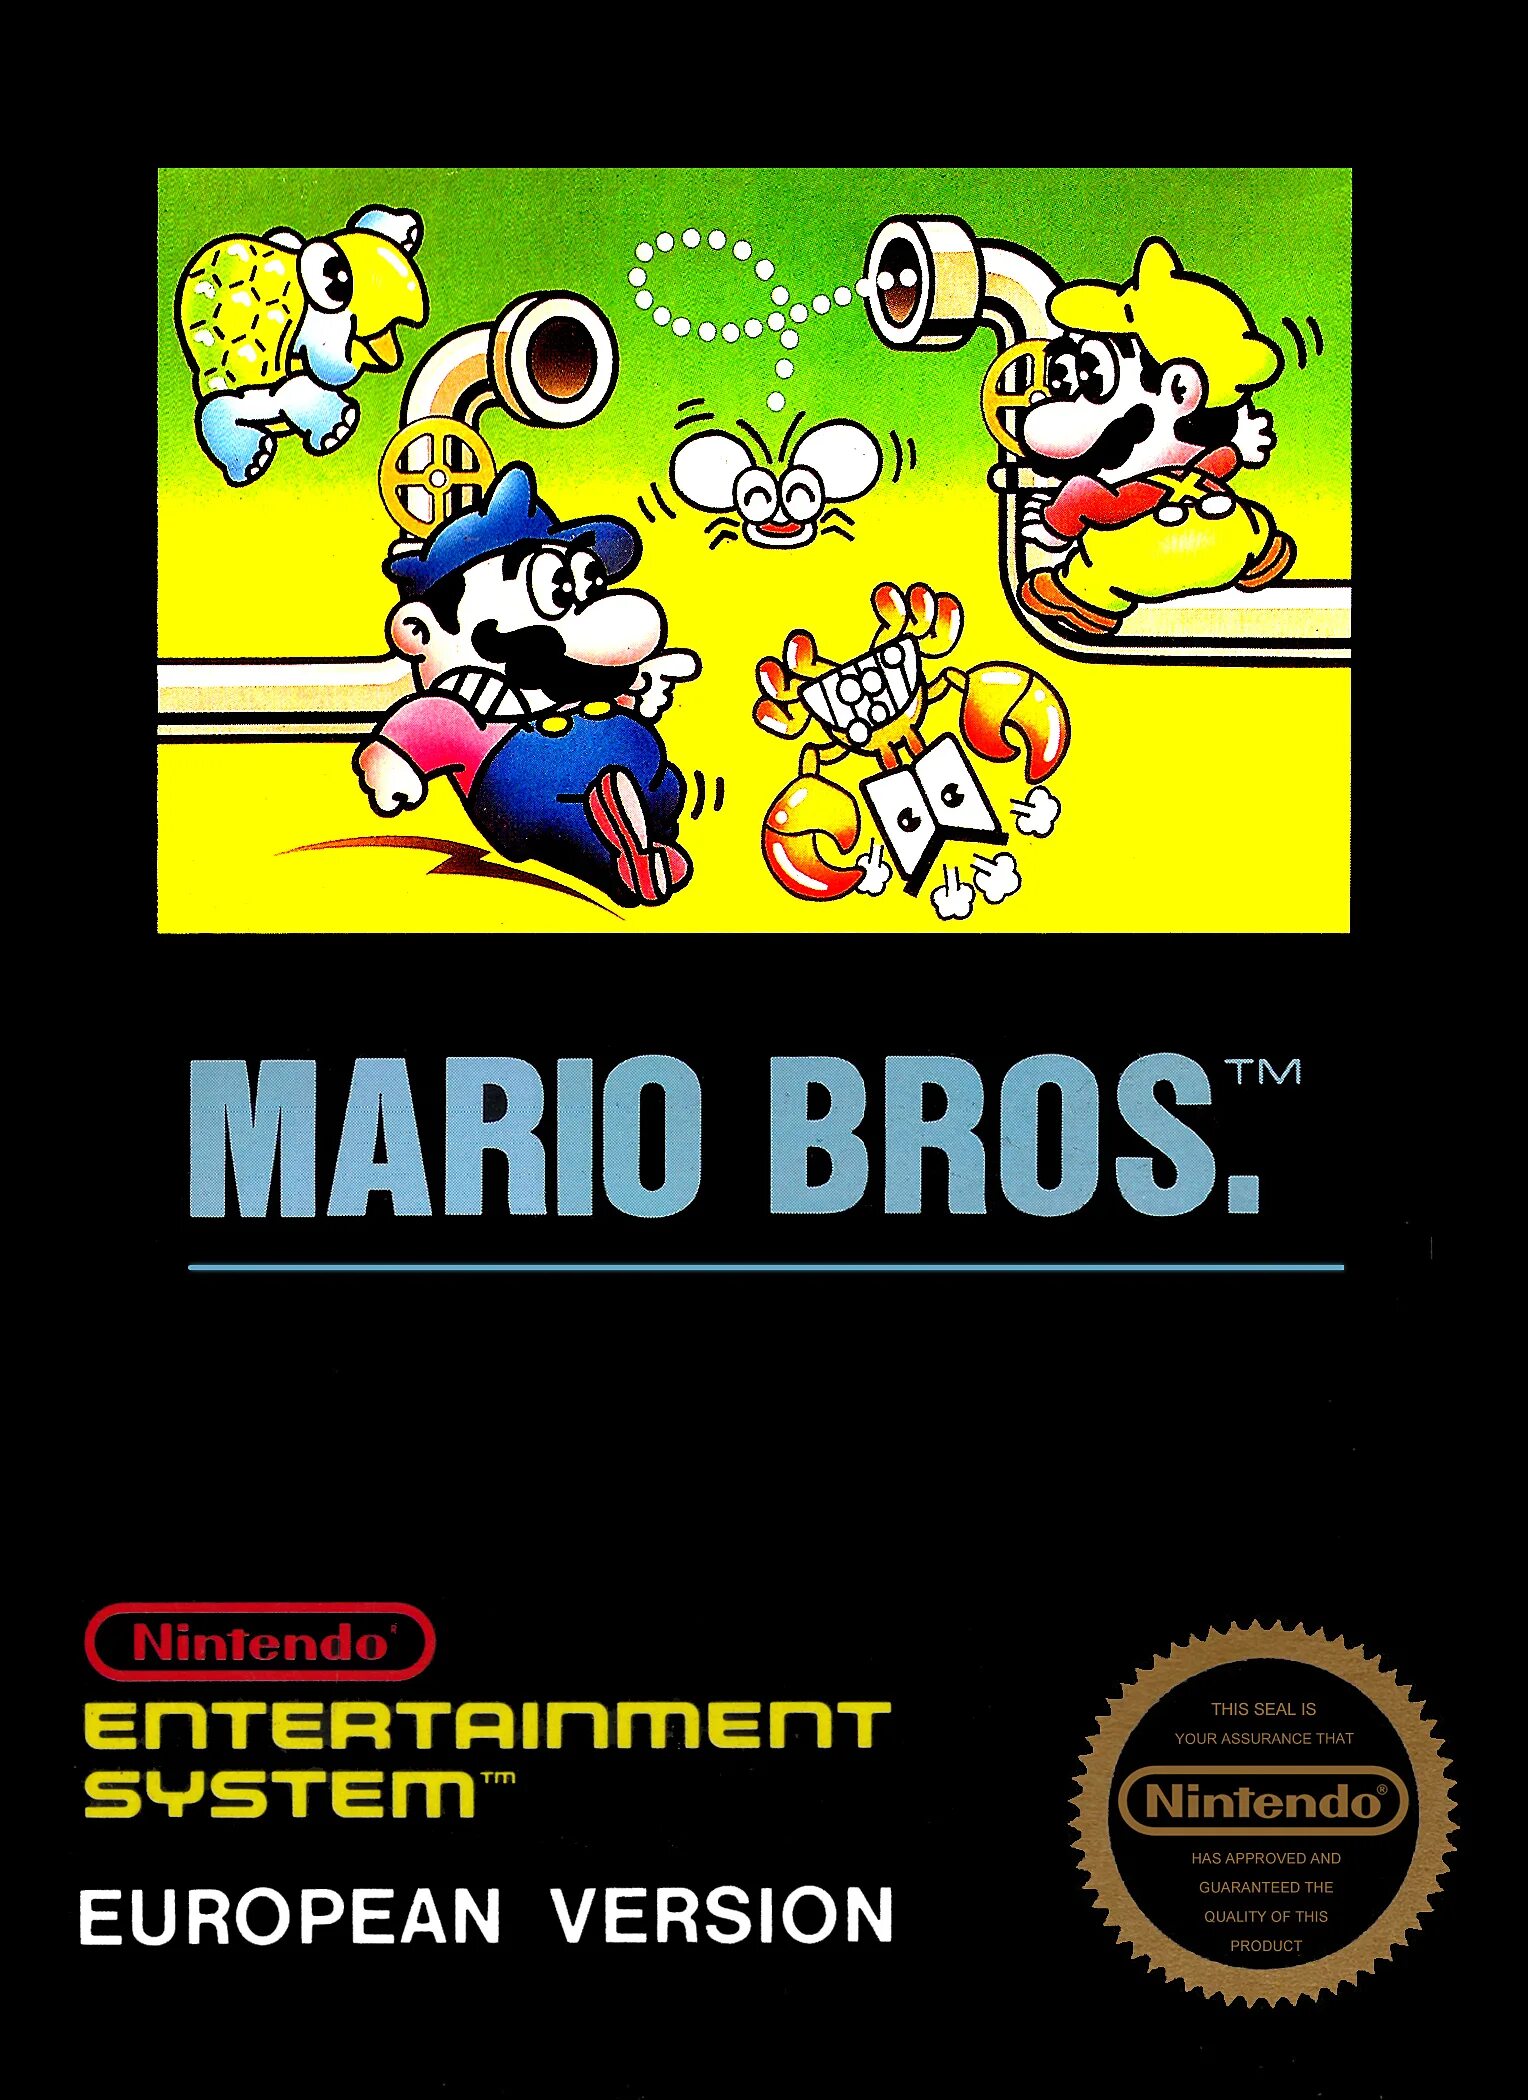 Super Mario Bros NES обложка. Mario Bros 1983 NES. Super Mario Bros Dendy обложка. Super Mario Bros 1985 NES.